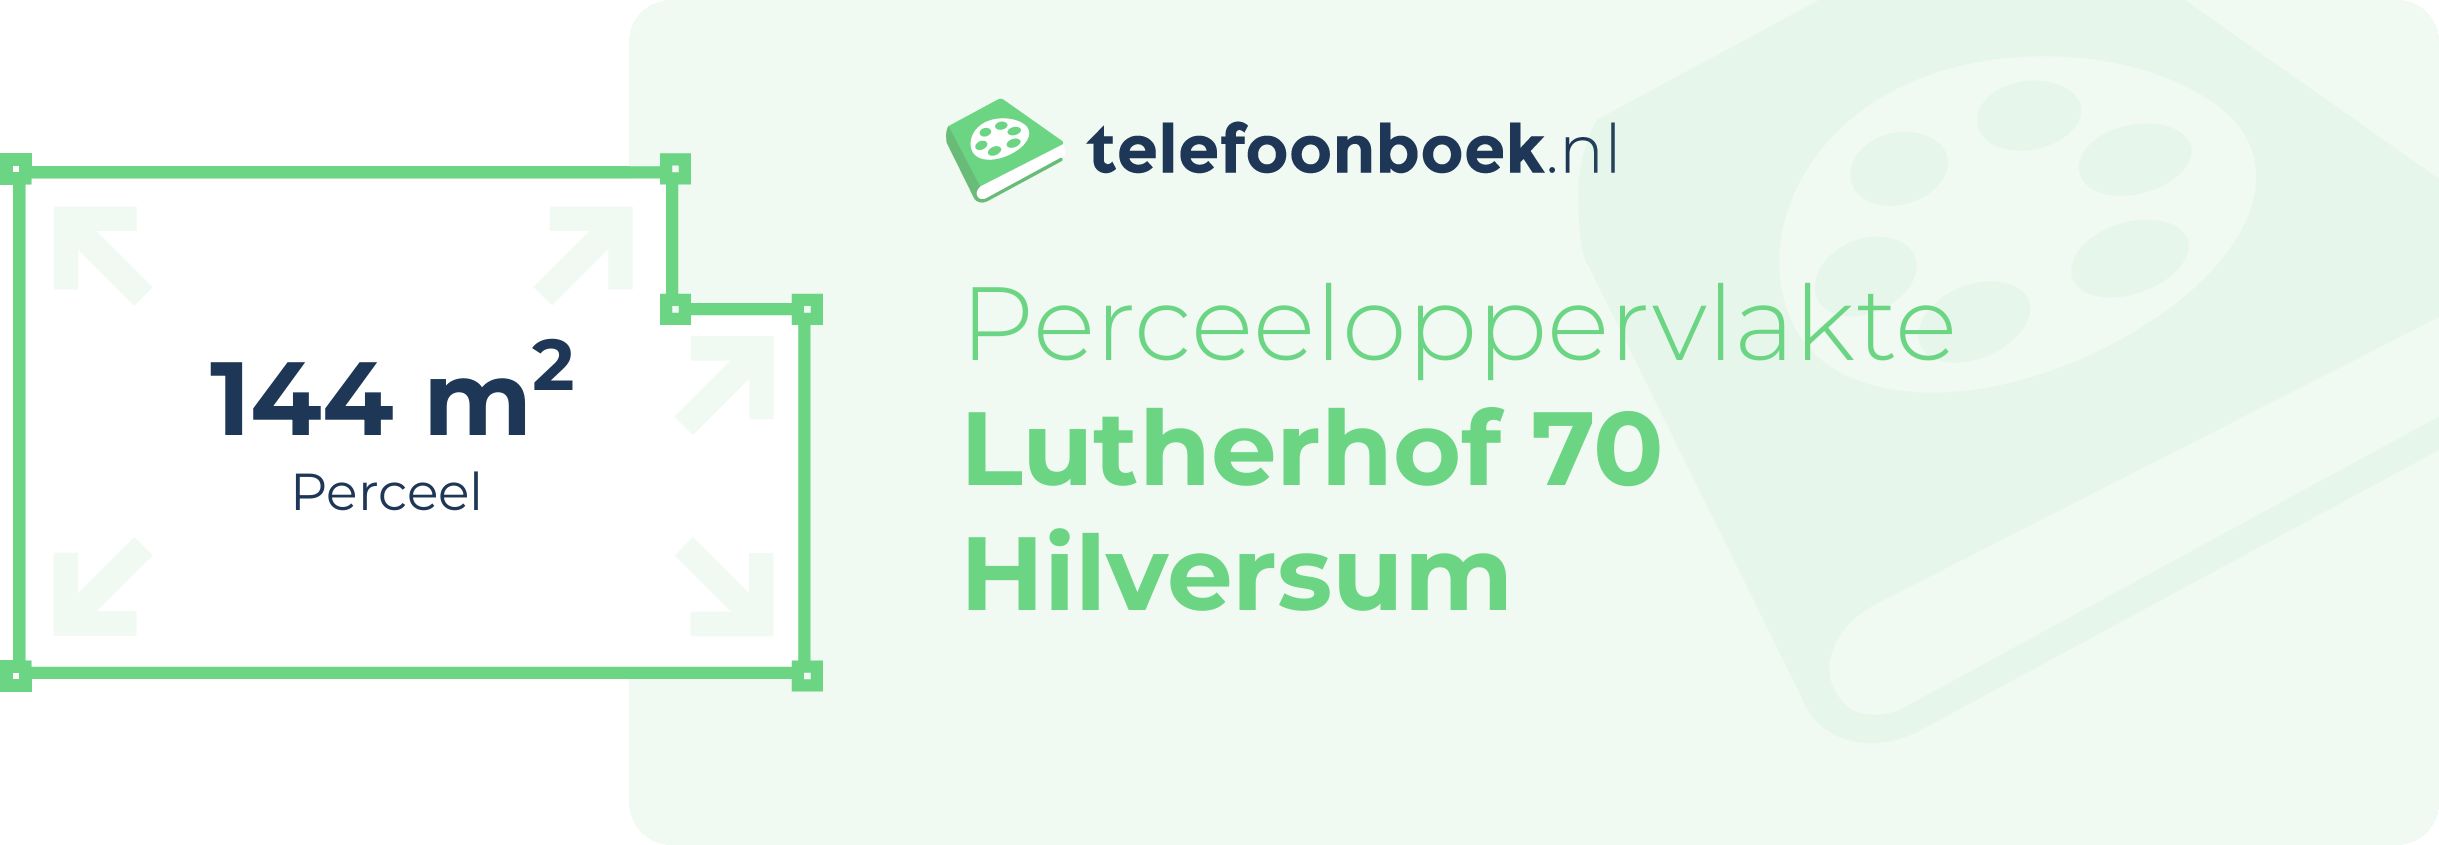 Perceeloppervlakte Lutherhof 70 Hilversum